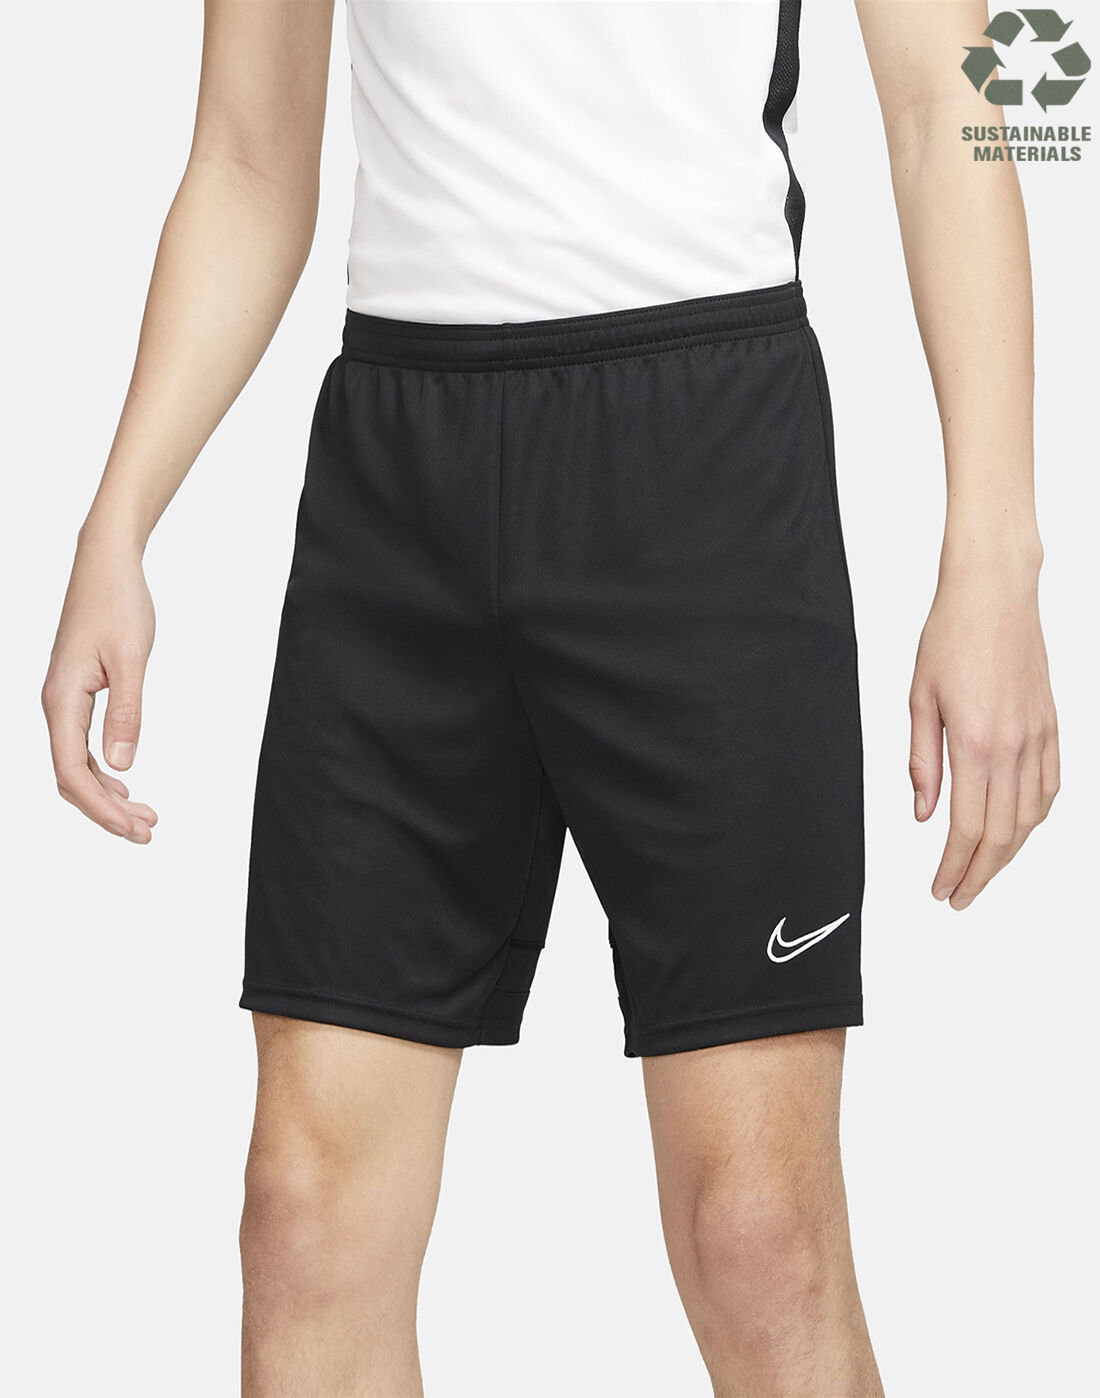 black nike shorts academy